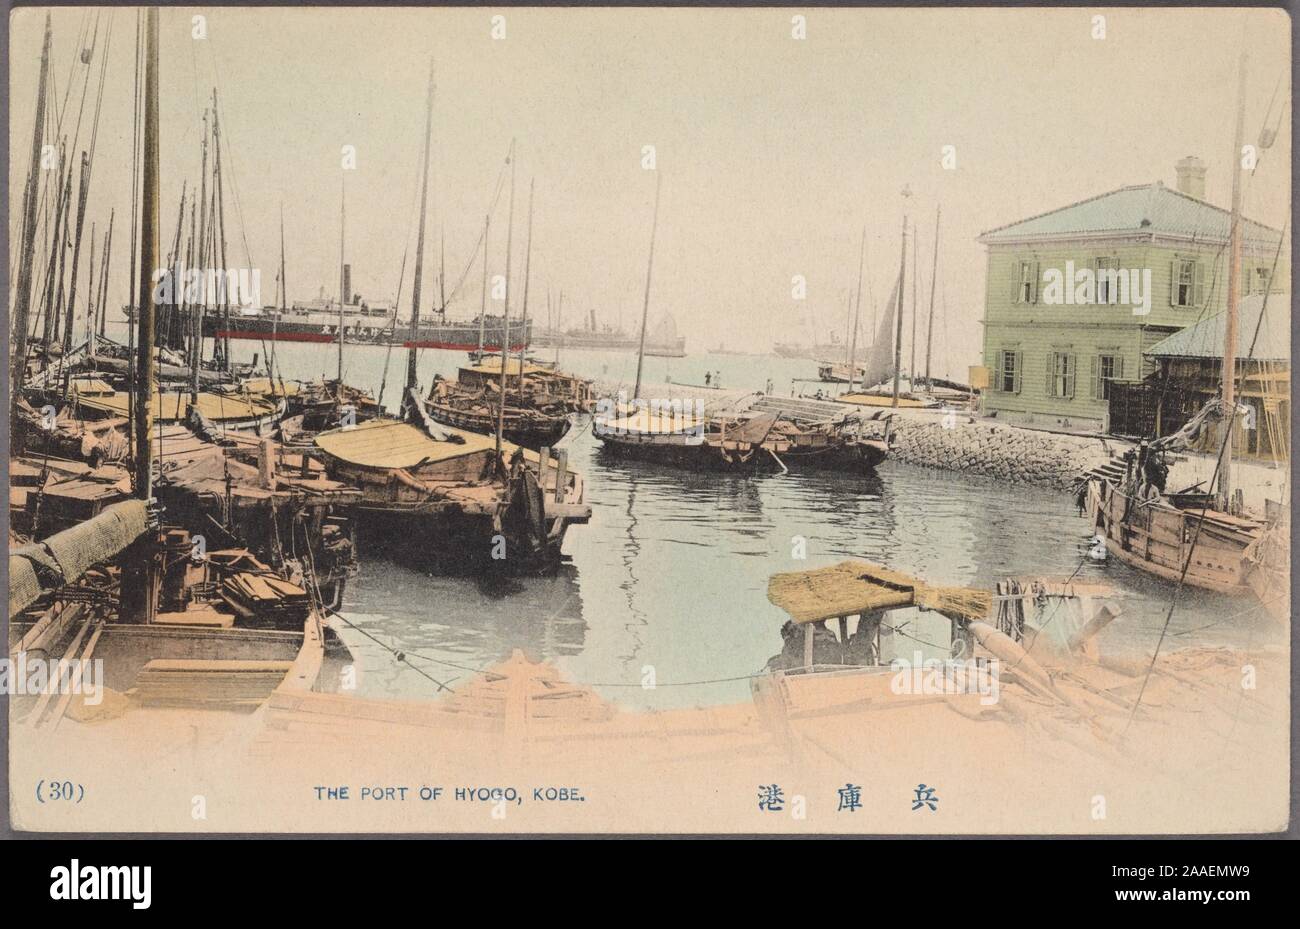 Carte postale illustrée de bateaux de pêche au Port de Hyogo, avec un navire de guerre dans l'arrière-plan, Kobe, Hyogo Prefecture, Japan, 1905. À partir de la Bibliothèque publique de New York. () Banque D'Images